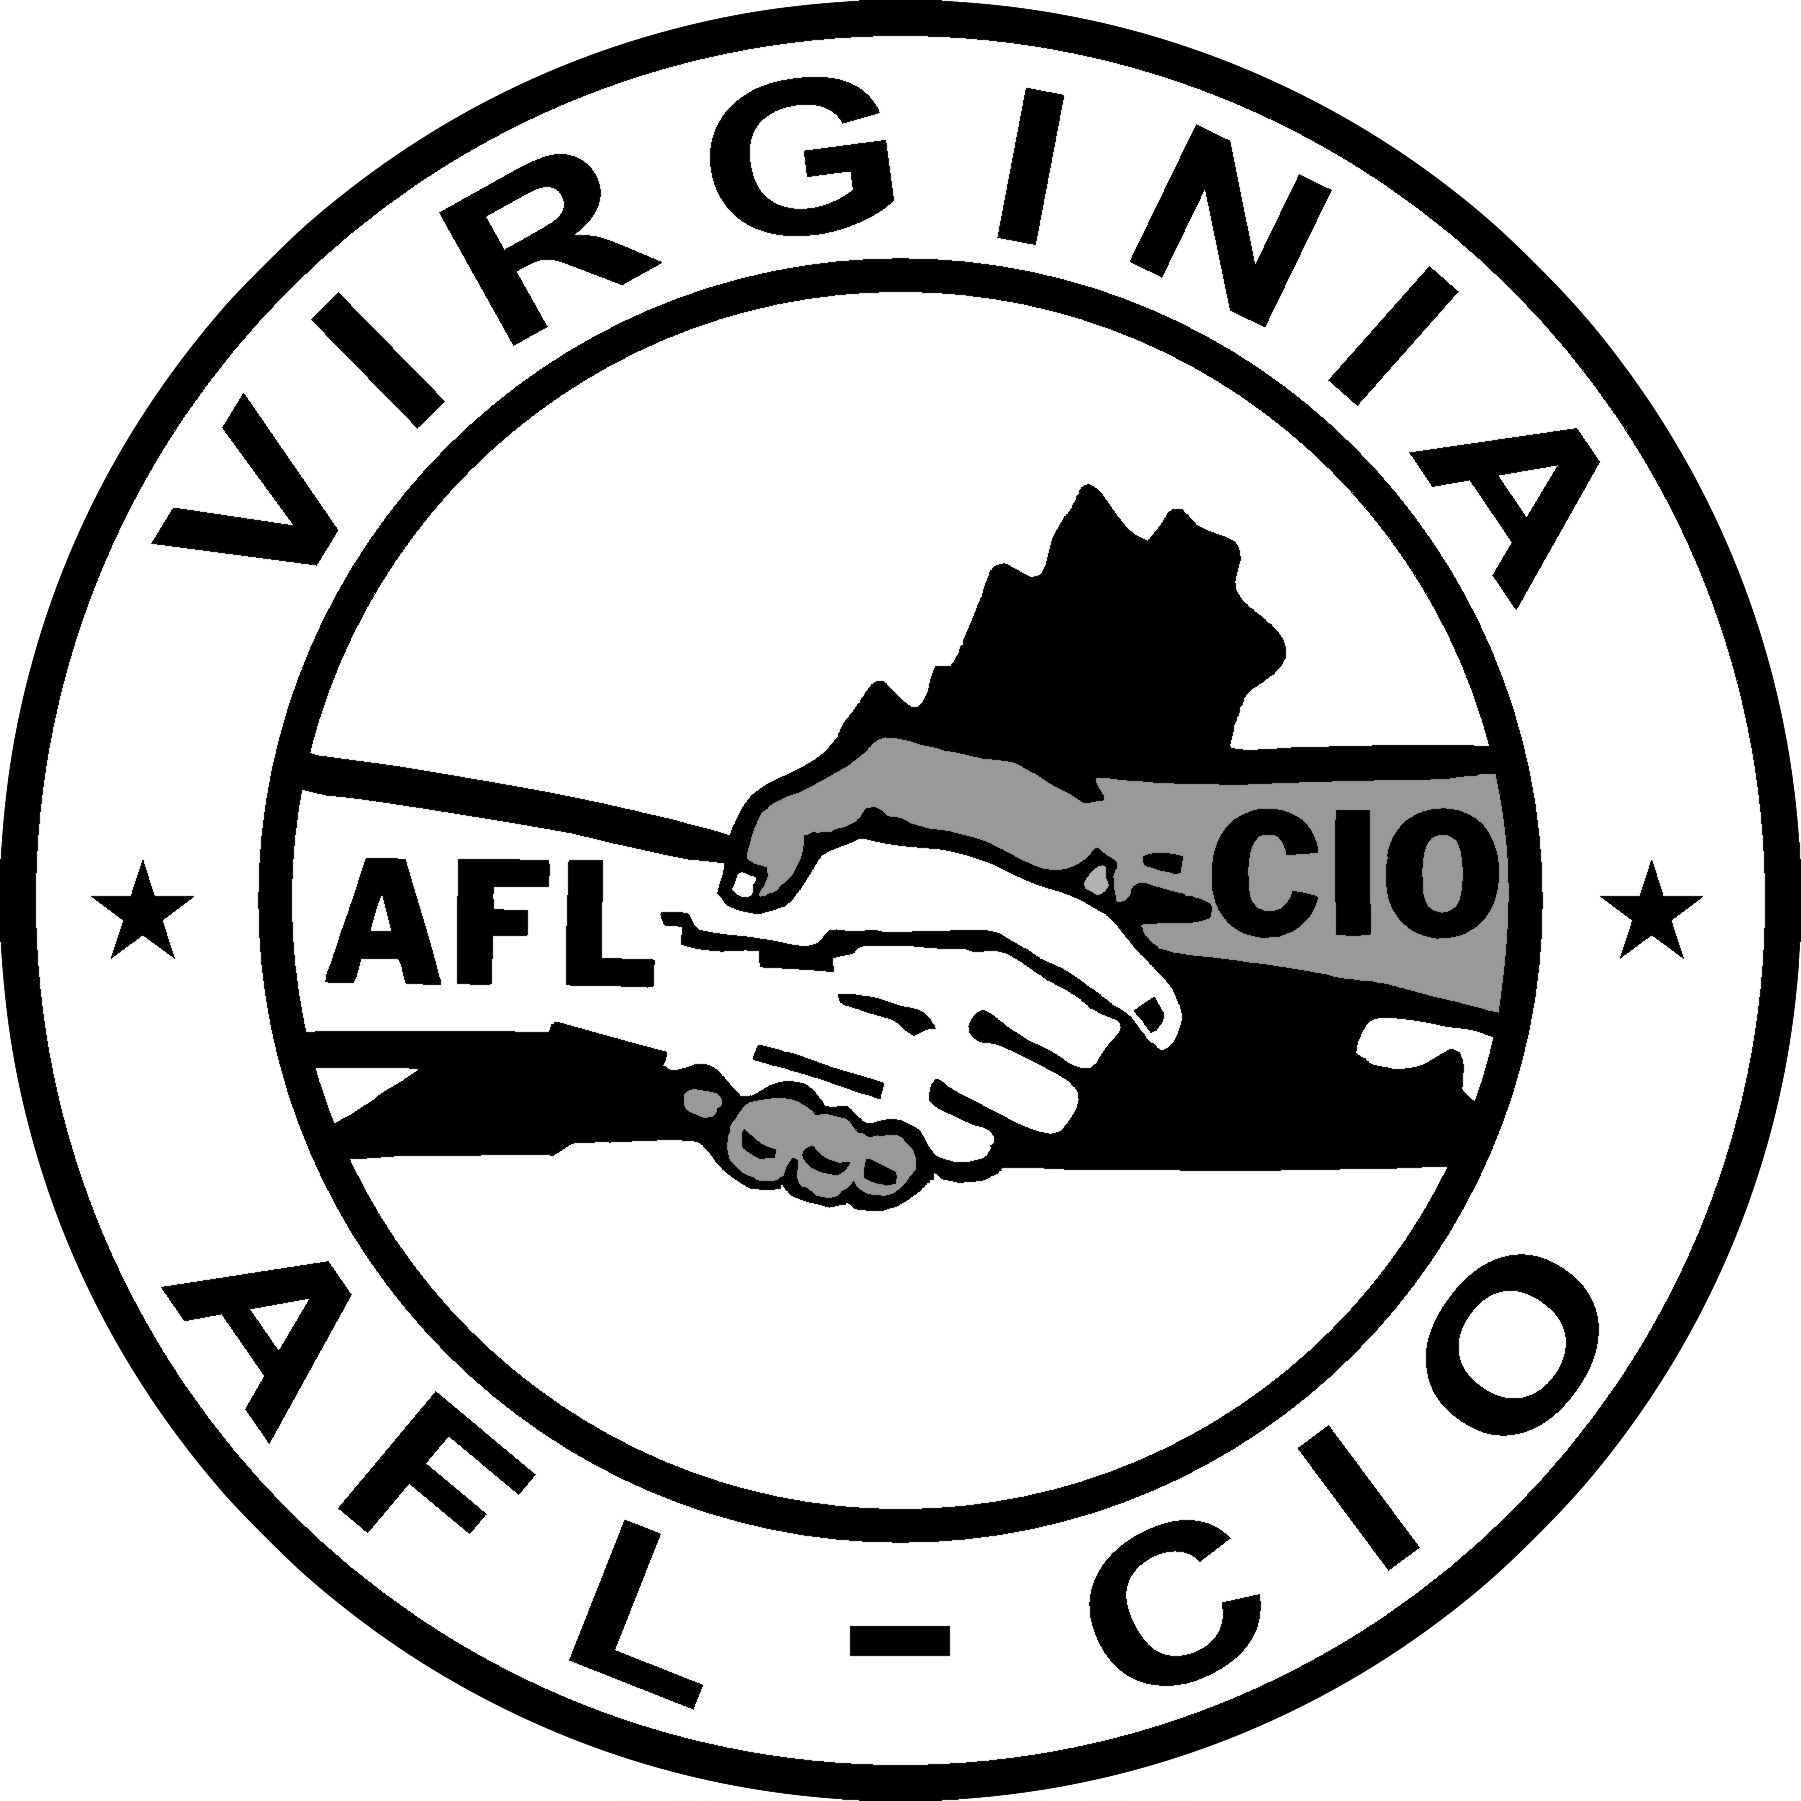 AFL-CIO Logo - Virginia AFL-CIO